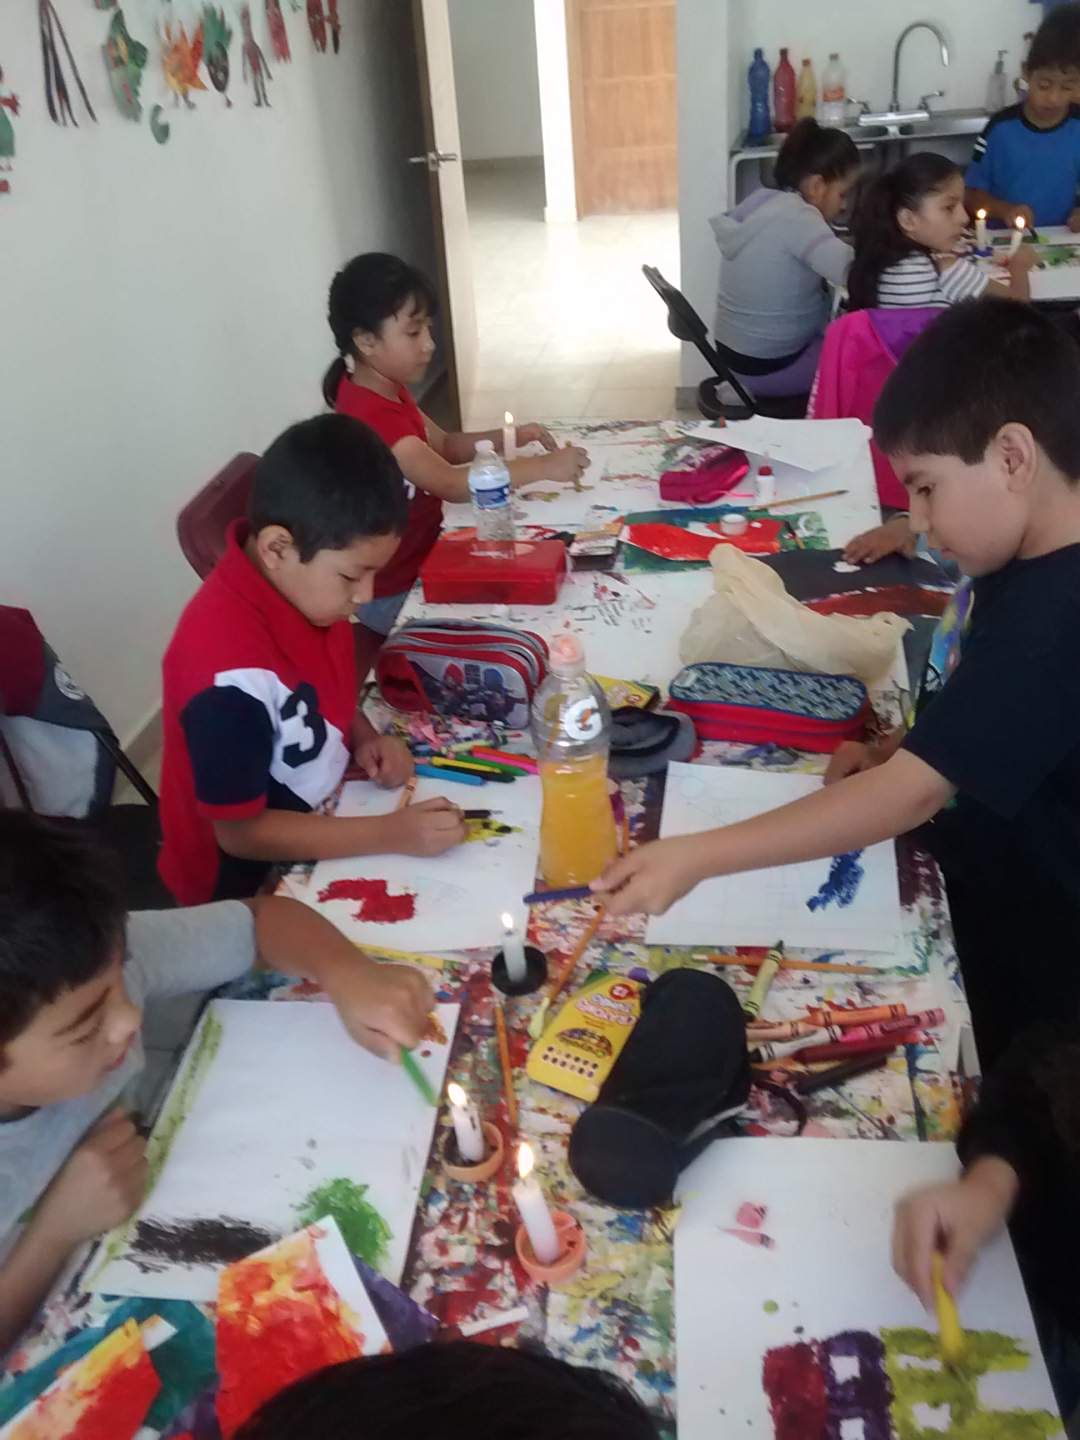 CEMART y la Casa de Cultura de Pachuquilla se alistan para el curso de verano "Veraneando con Arte 2019"